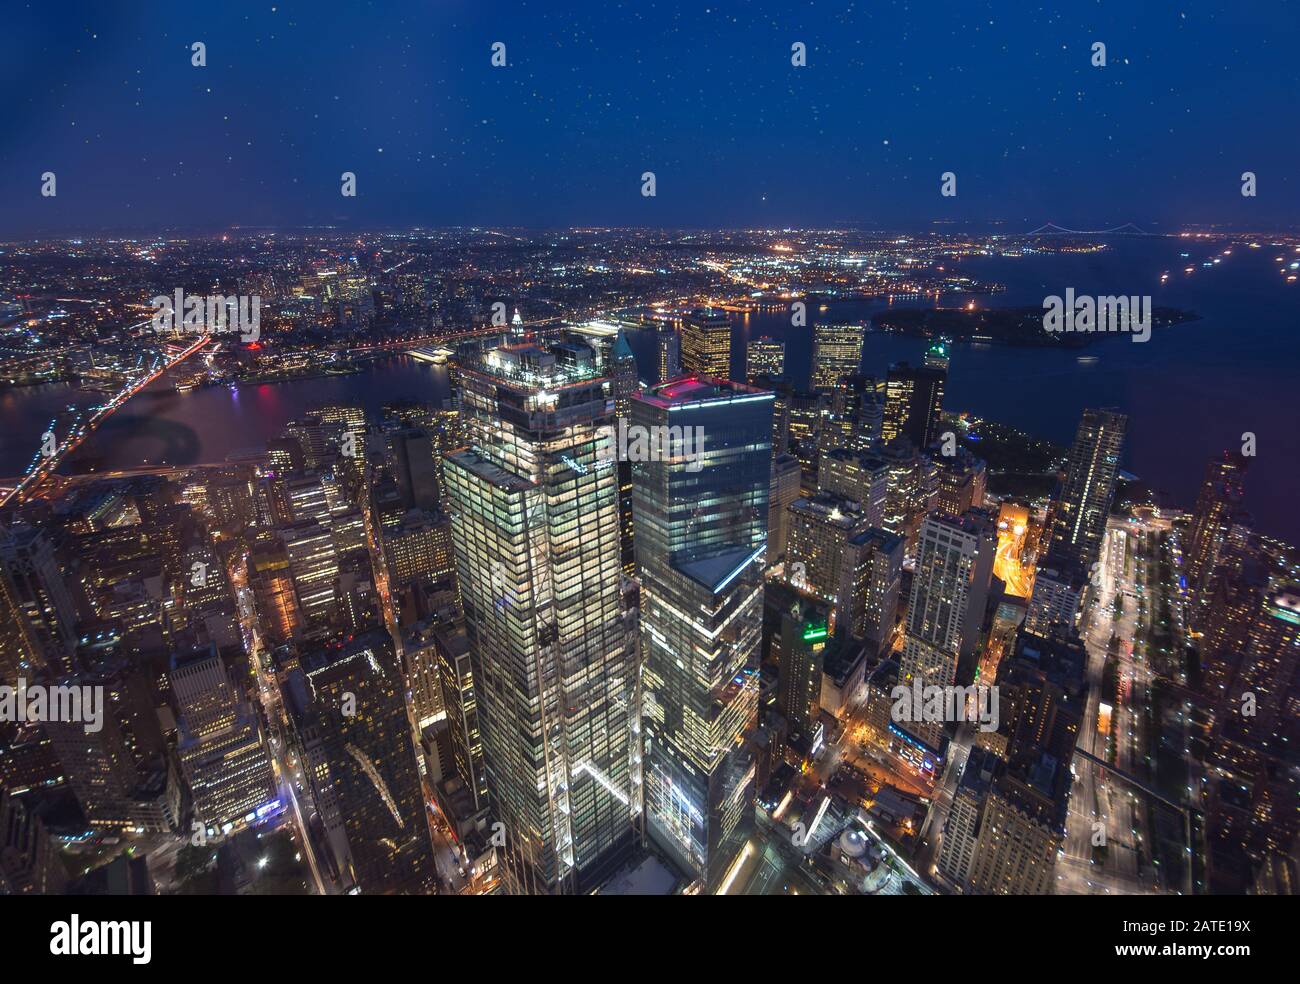 Le pont de Brooklyn et les gratte-ciel de Manhattan de New York illuminés la nuit avec une tête pleine lune. Nuit paysage à New York Banque D'Images